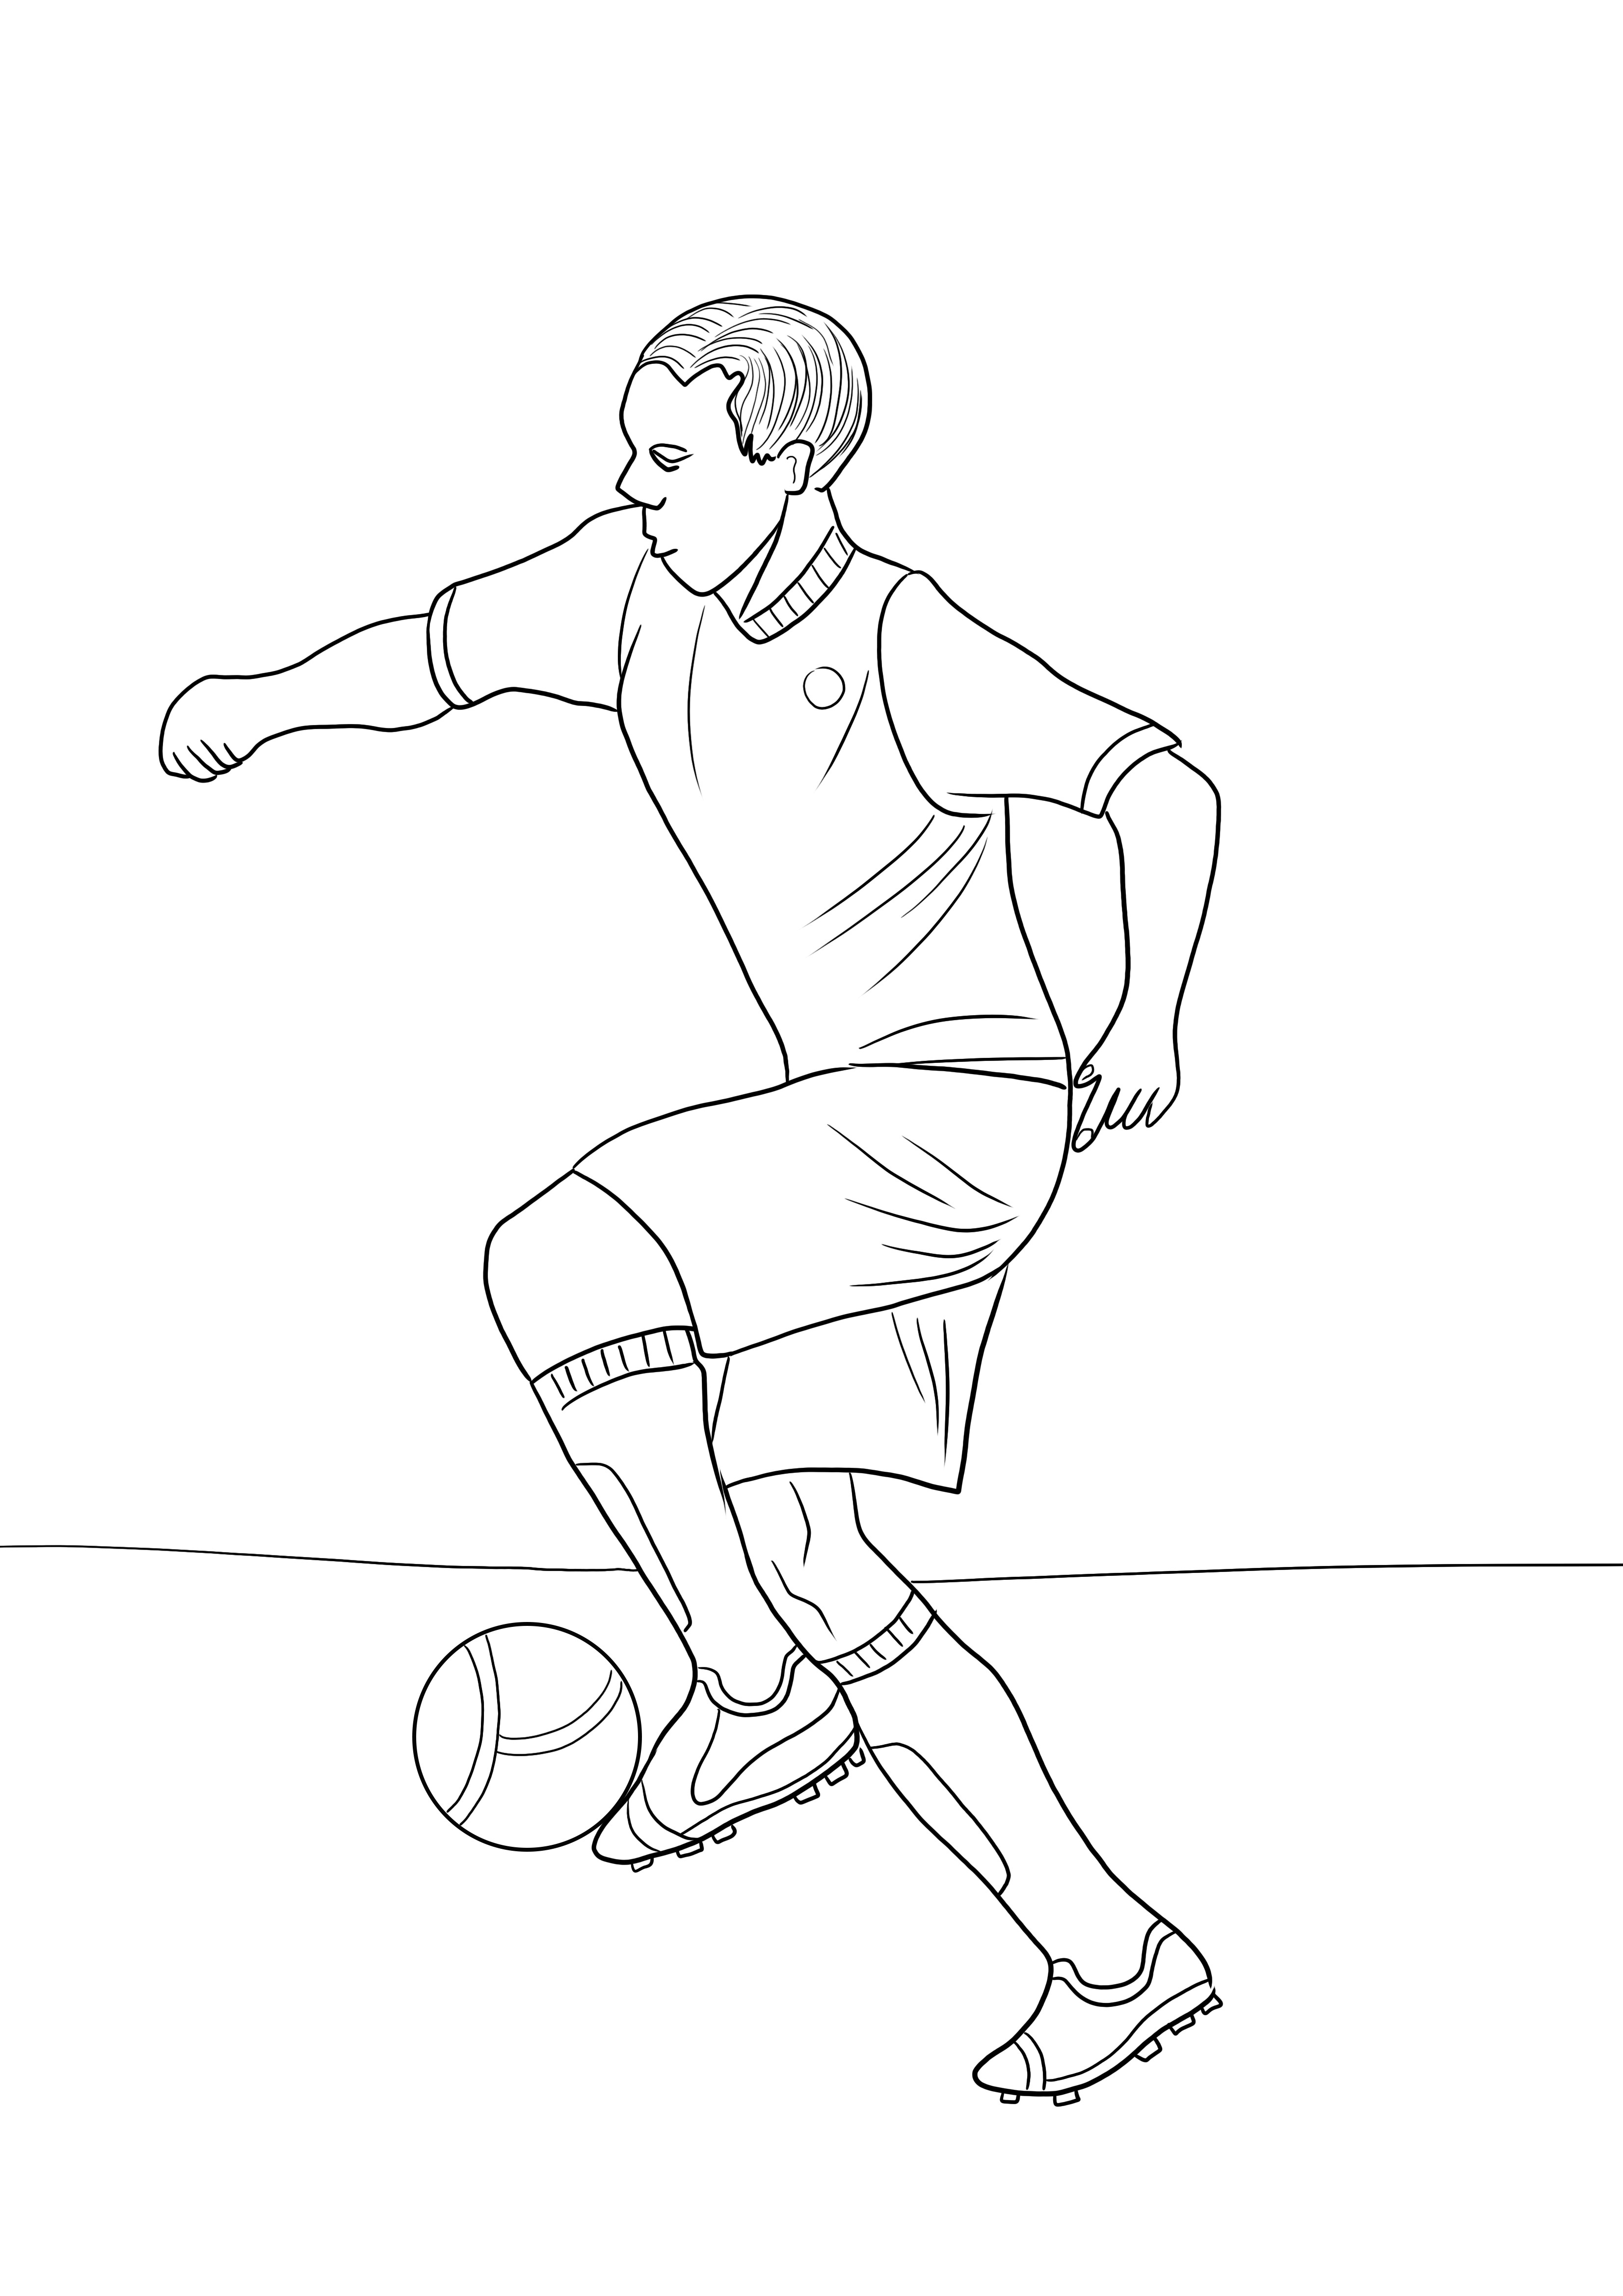 Download gratuito e immagine a colori di un giocatore di football per un facile approfondimento dell'argomento sportivo